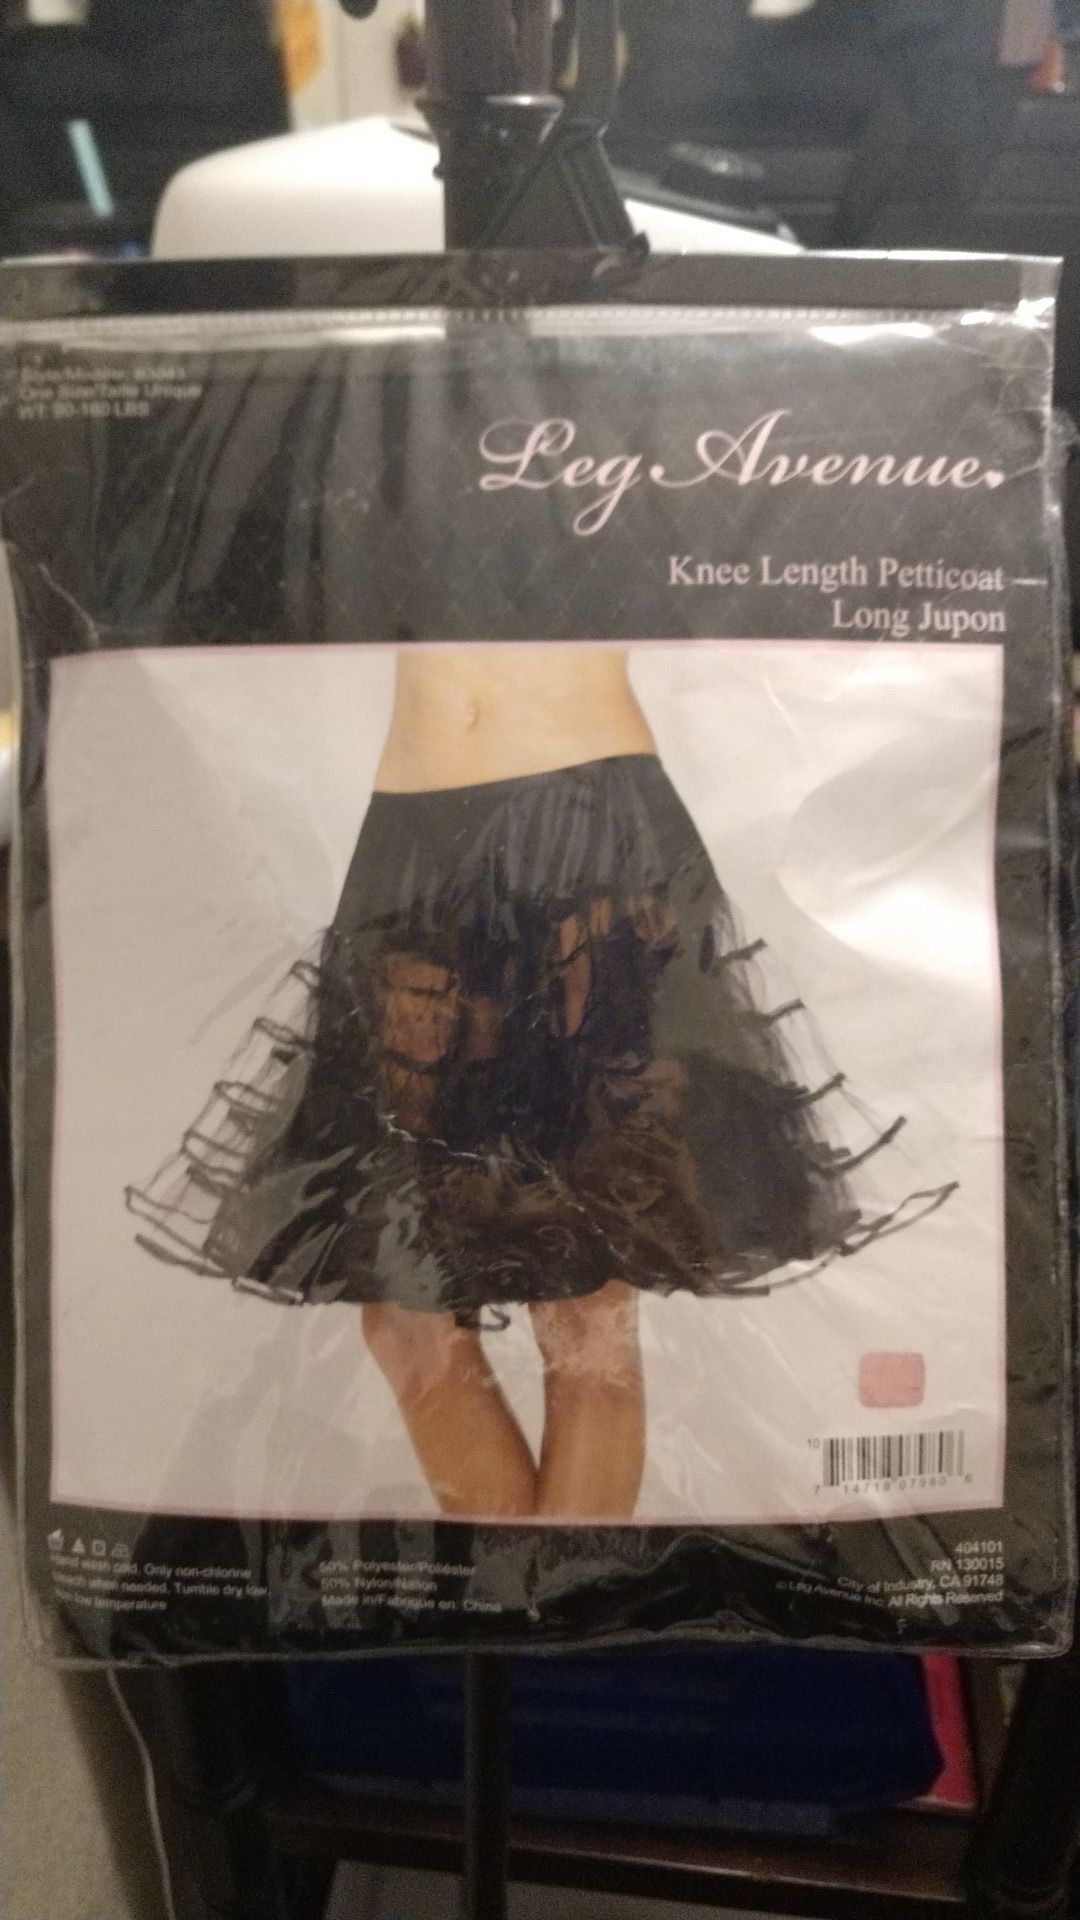 Knee length petticoat